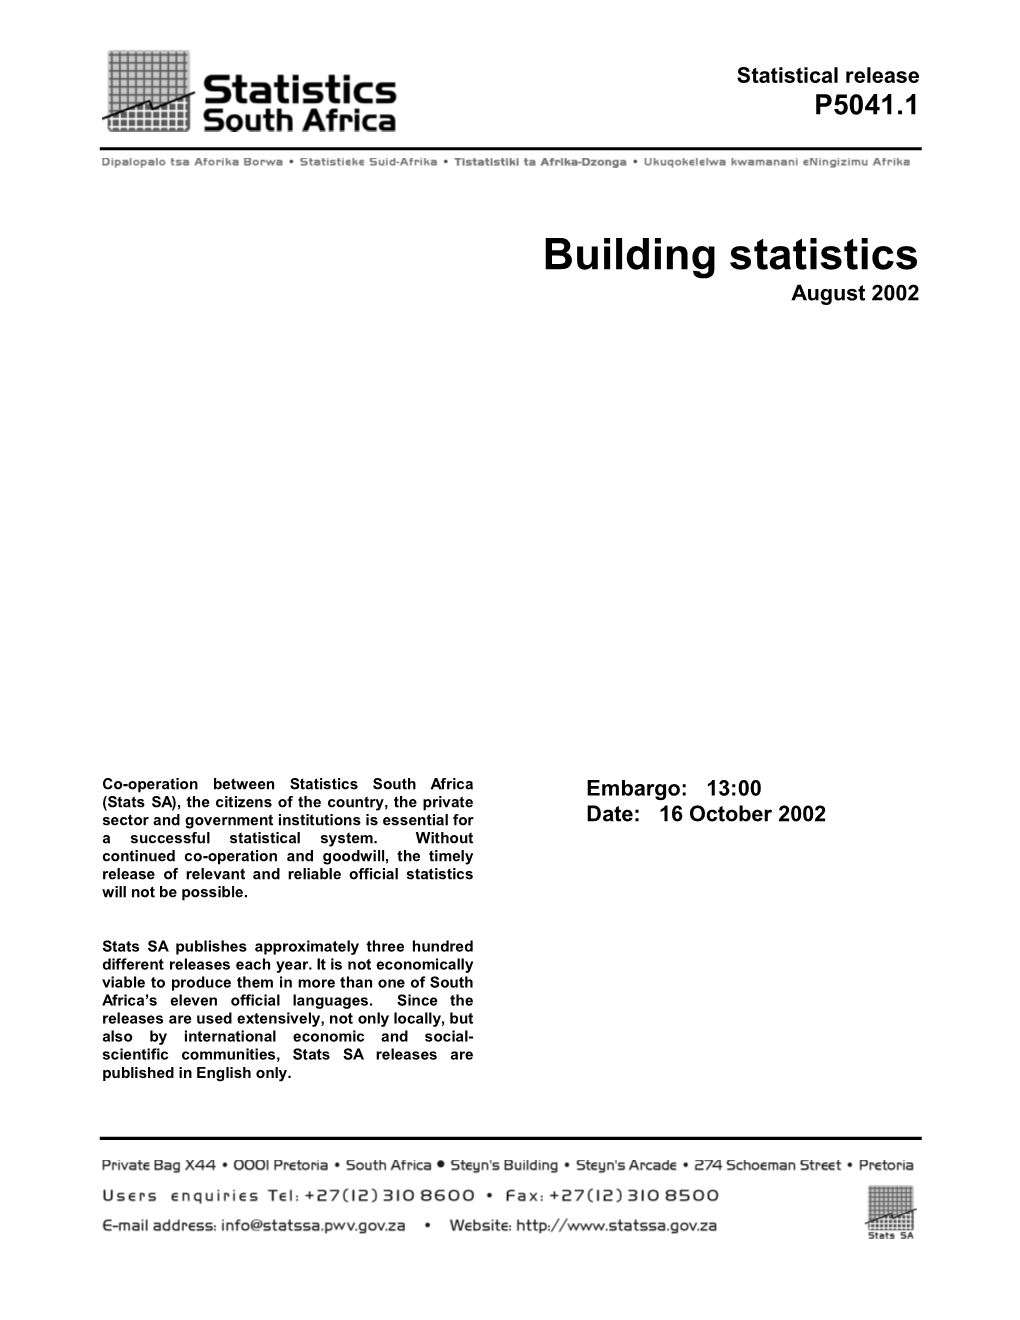 Building Statistics August 2002